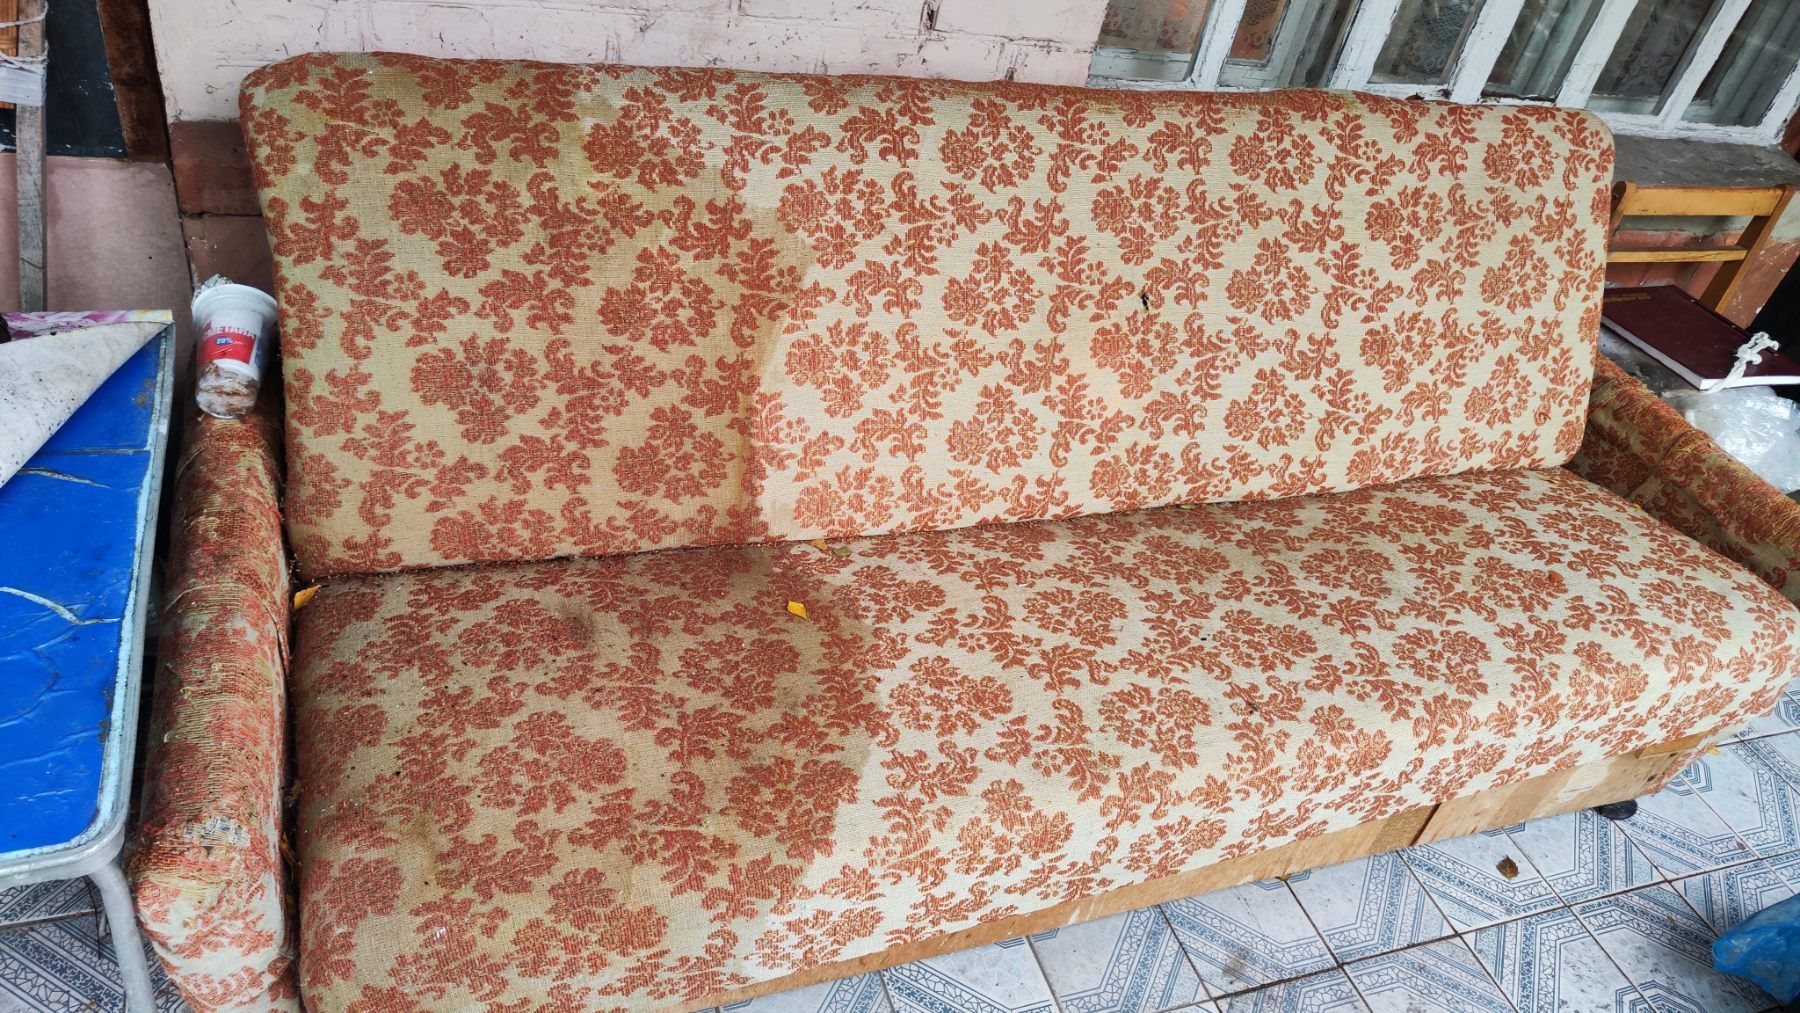 Отдам старый советский диван